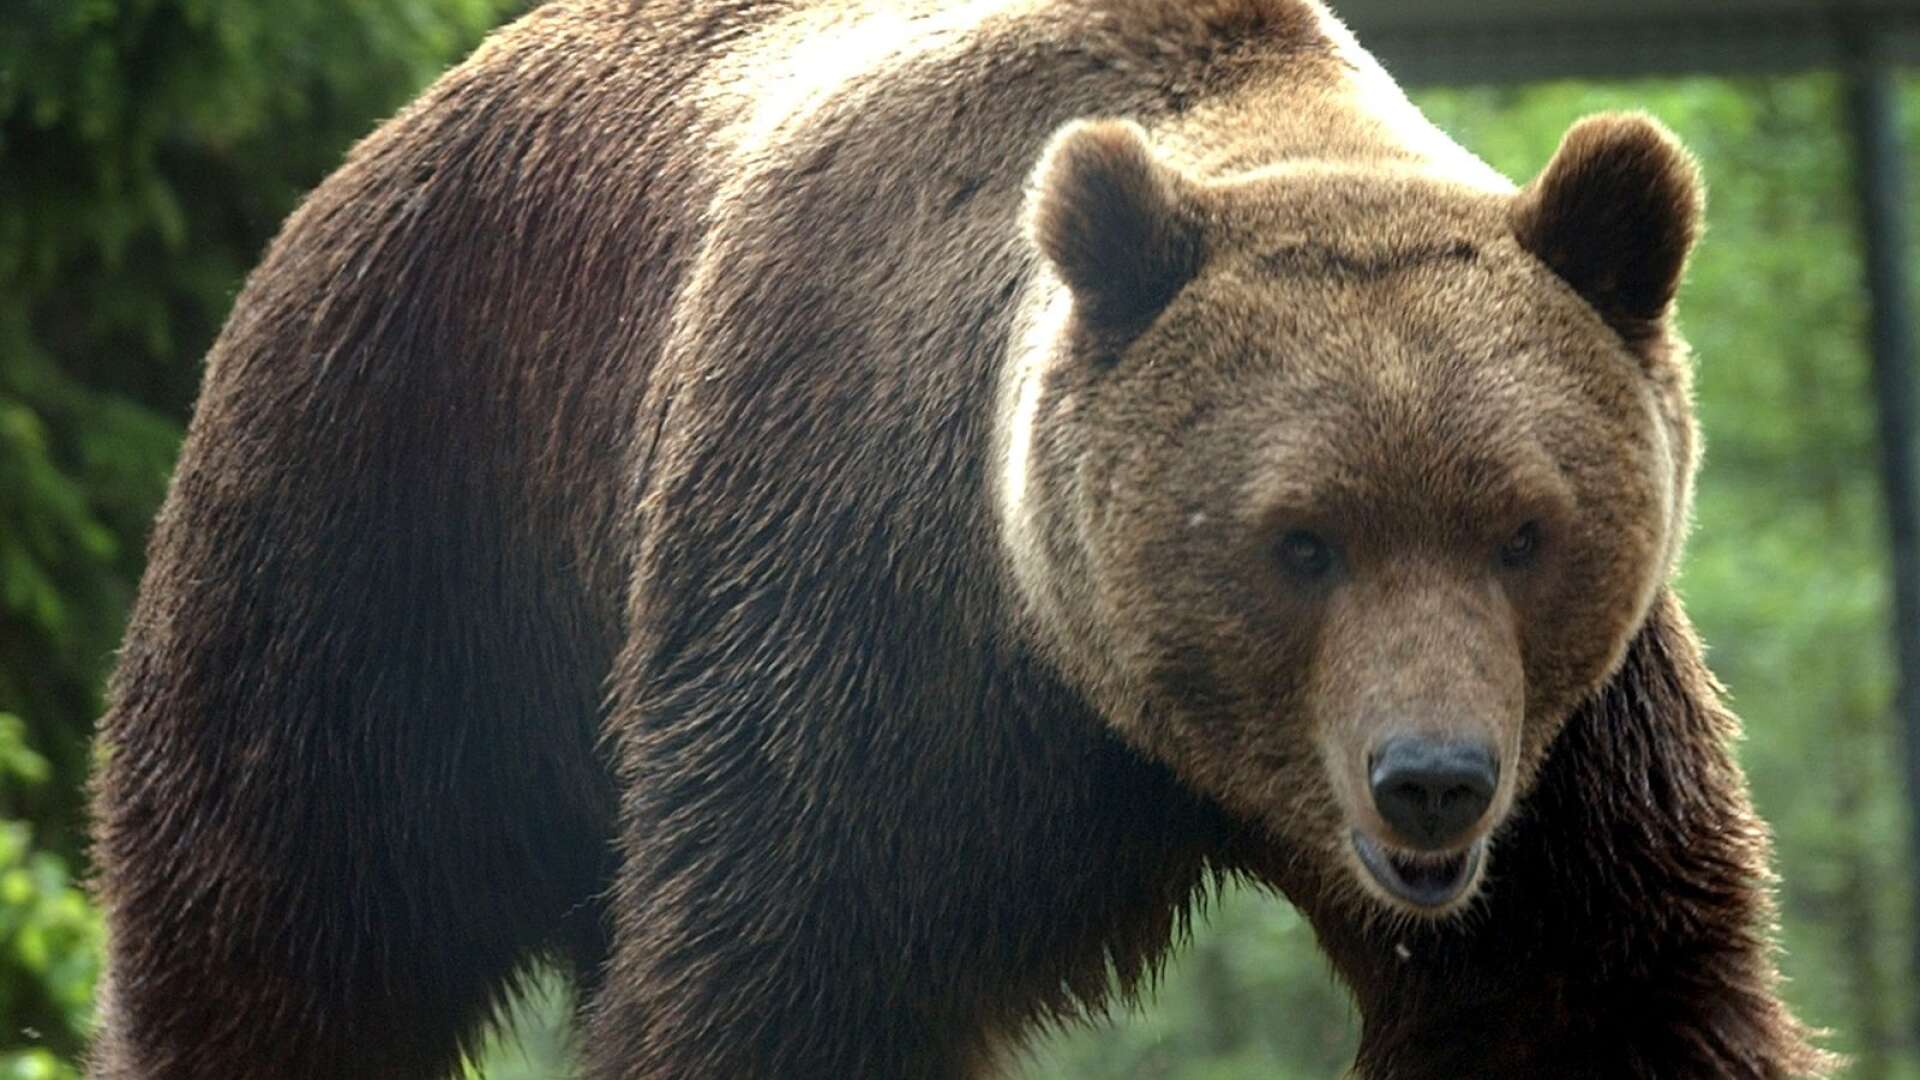 Nu börjar årets björnjakt i Värmland. Björnen på bilden omfattas inte av jakten, då den är hemmahörande på Kolmårdens djurpark.